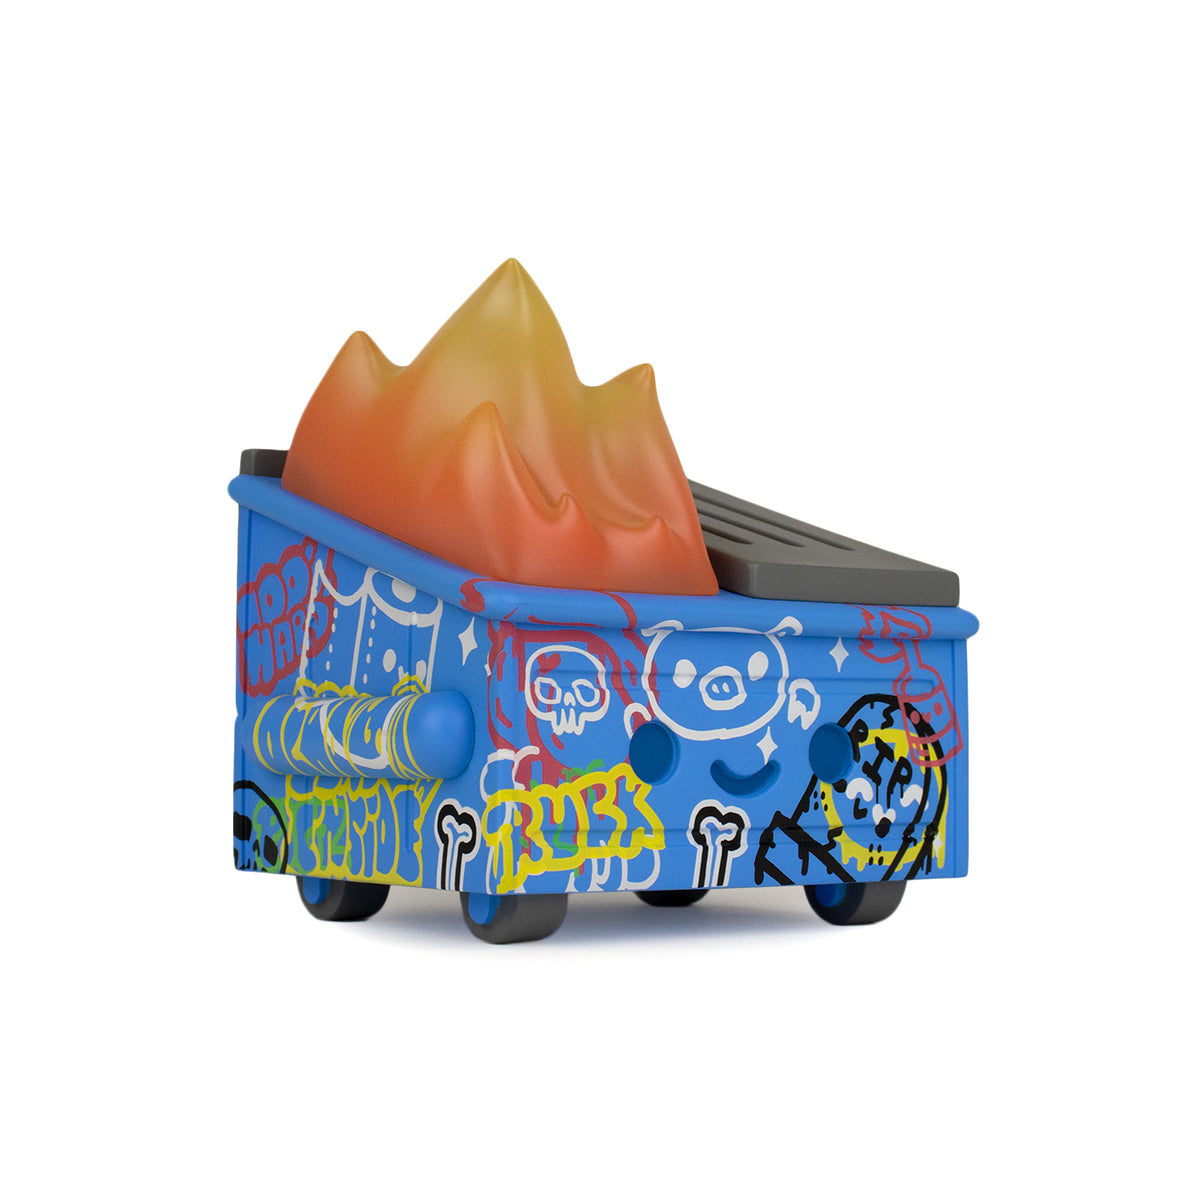 Dumpster Fire - Graffiti Vinyl Figure